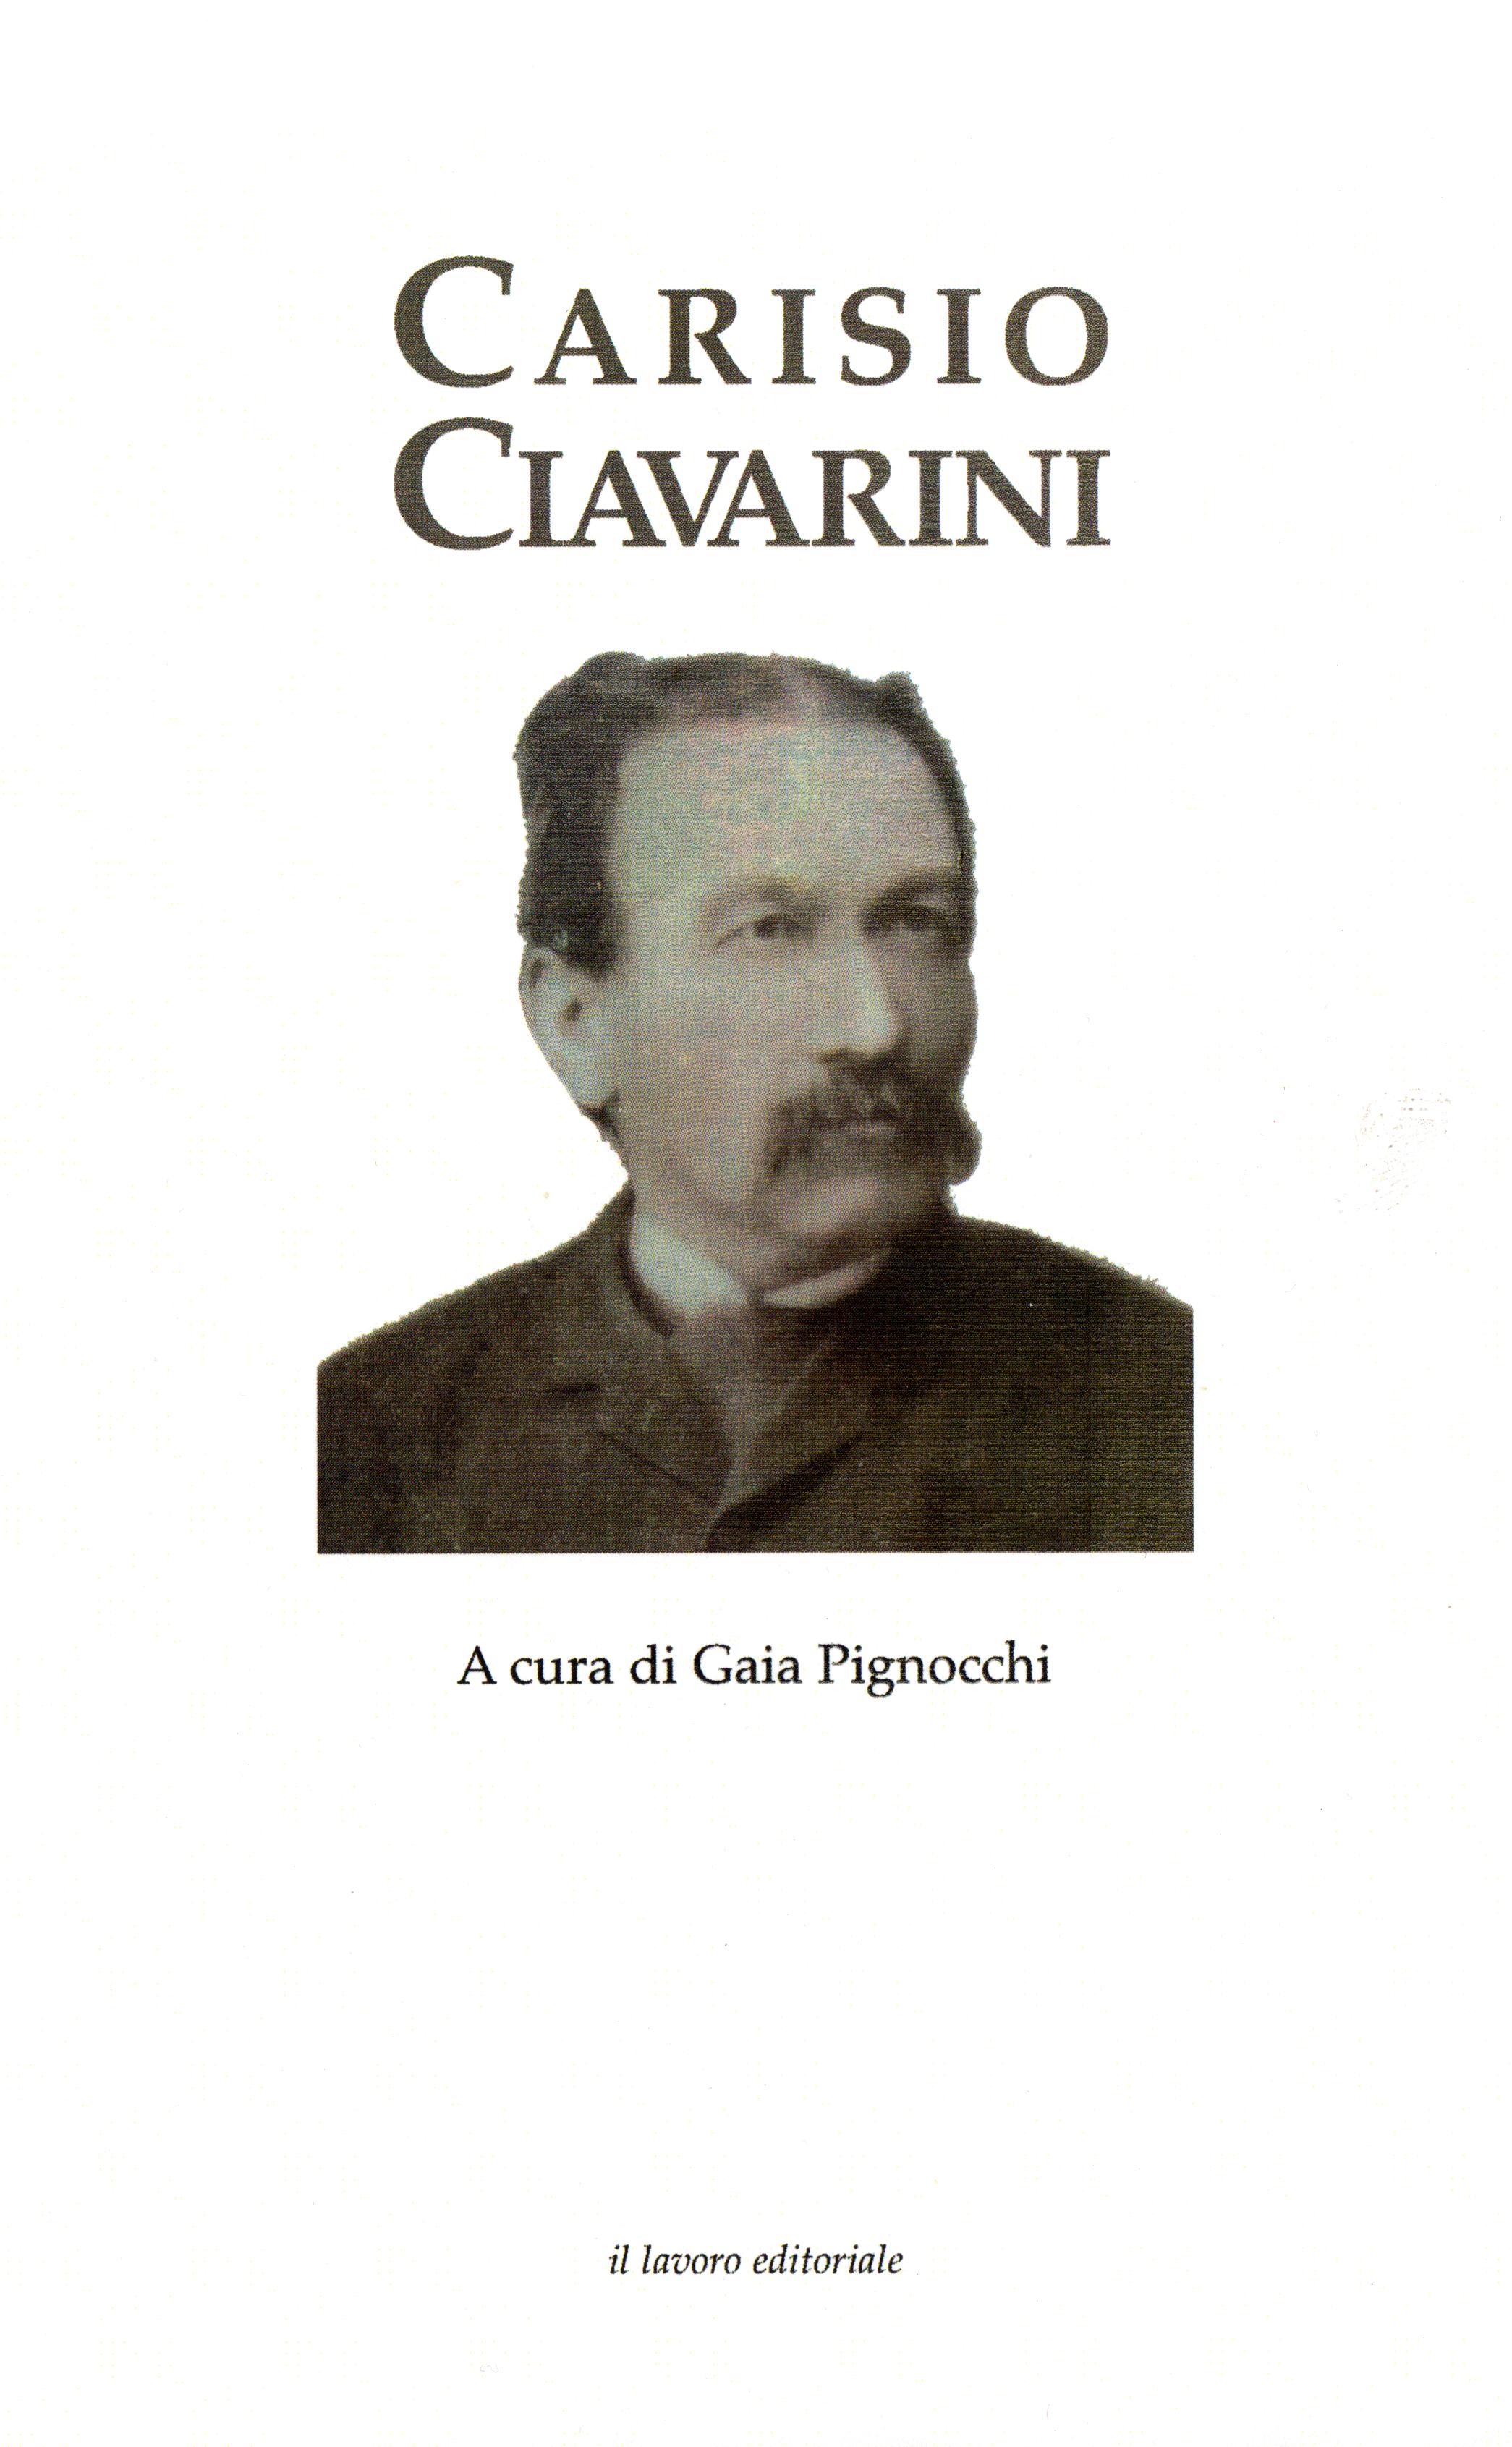 Carisio Ciavarini